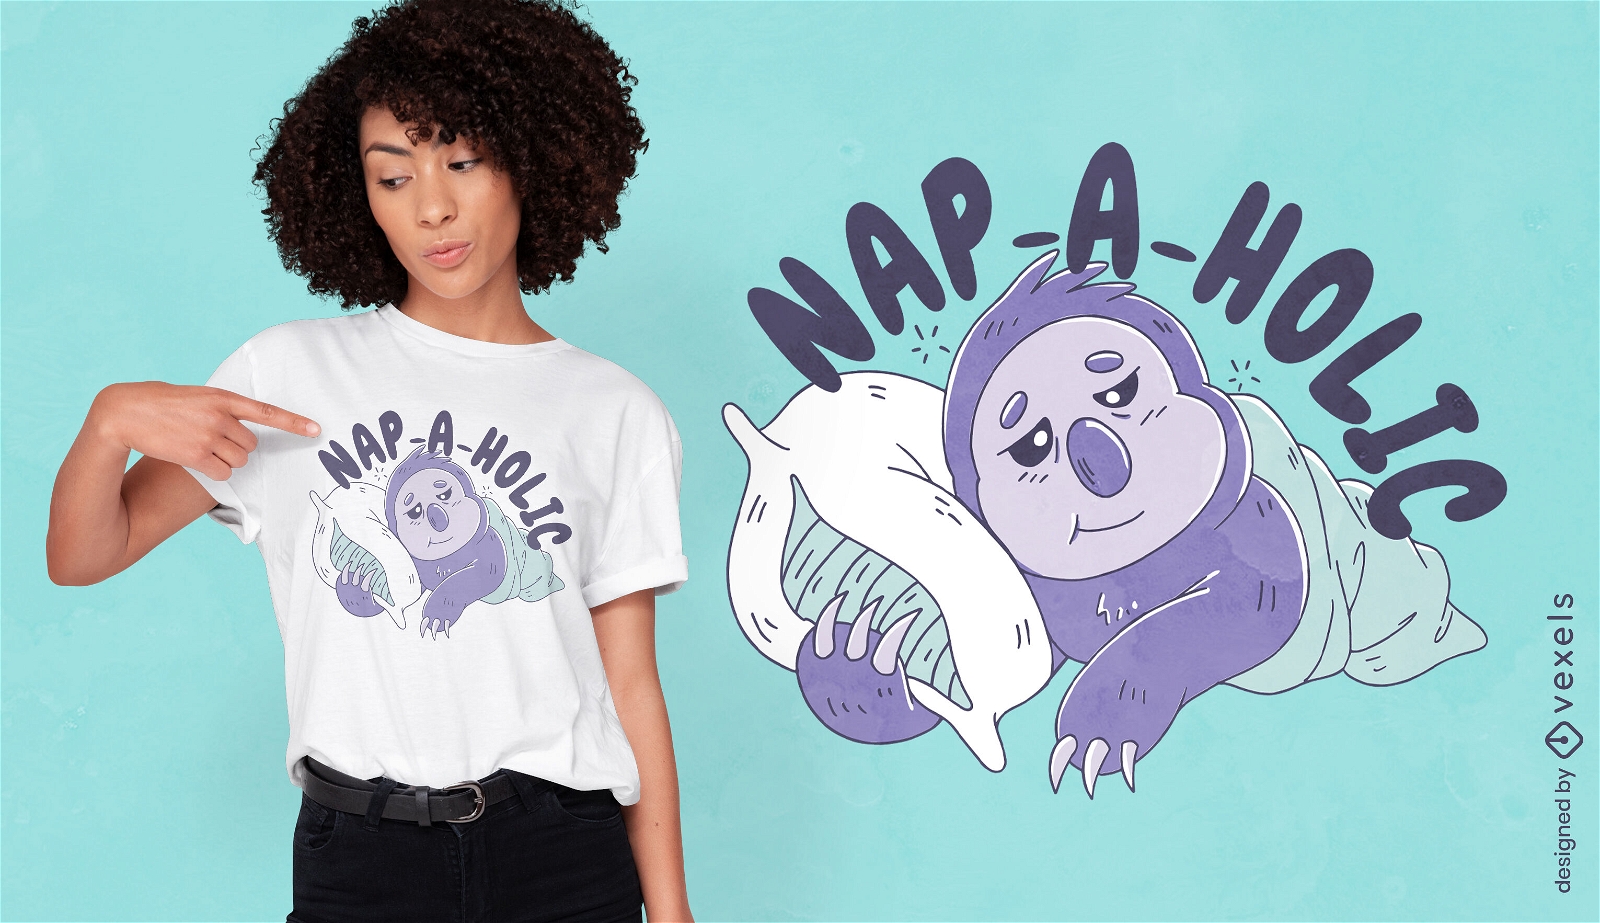 Napping sloth t-shirt design